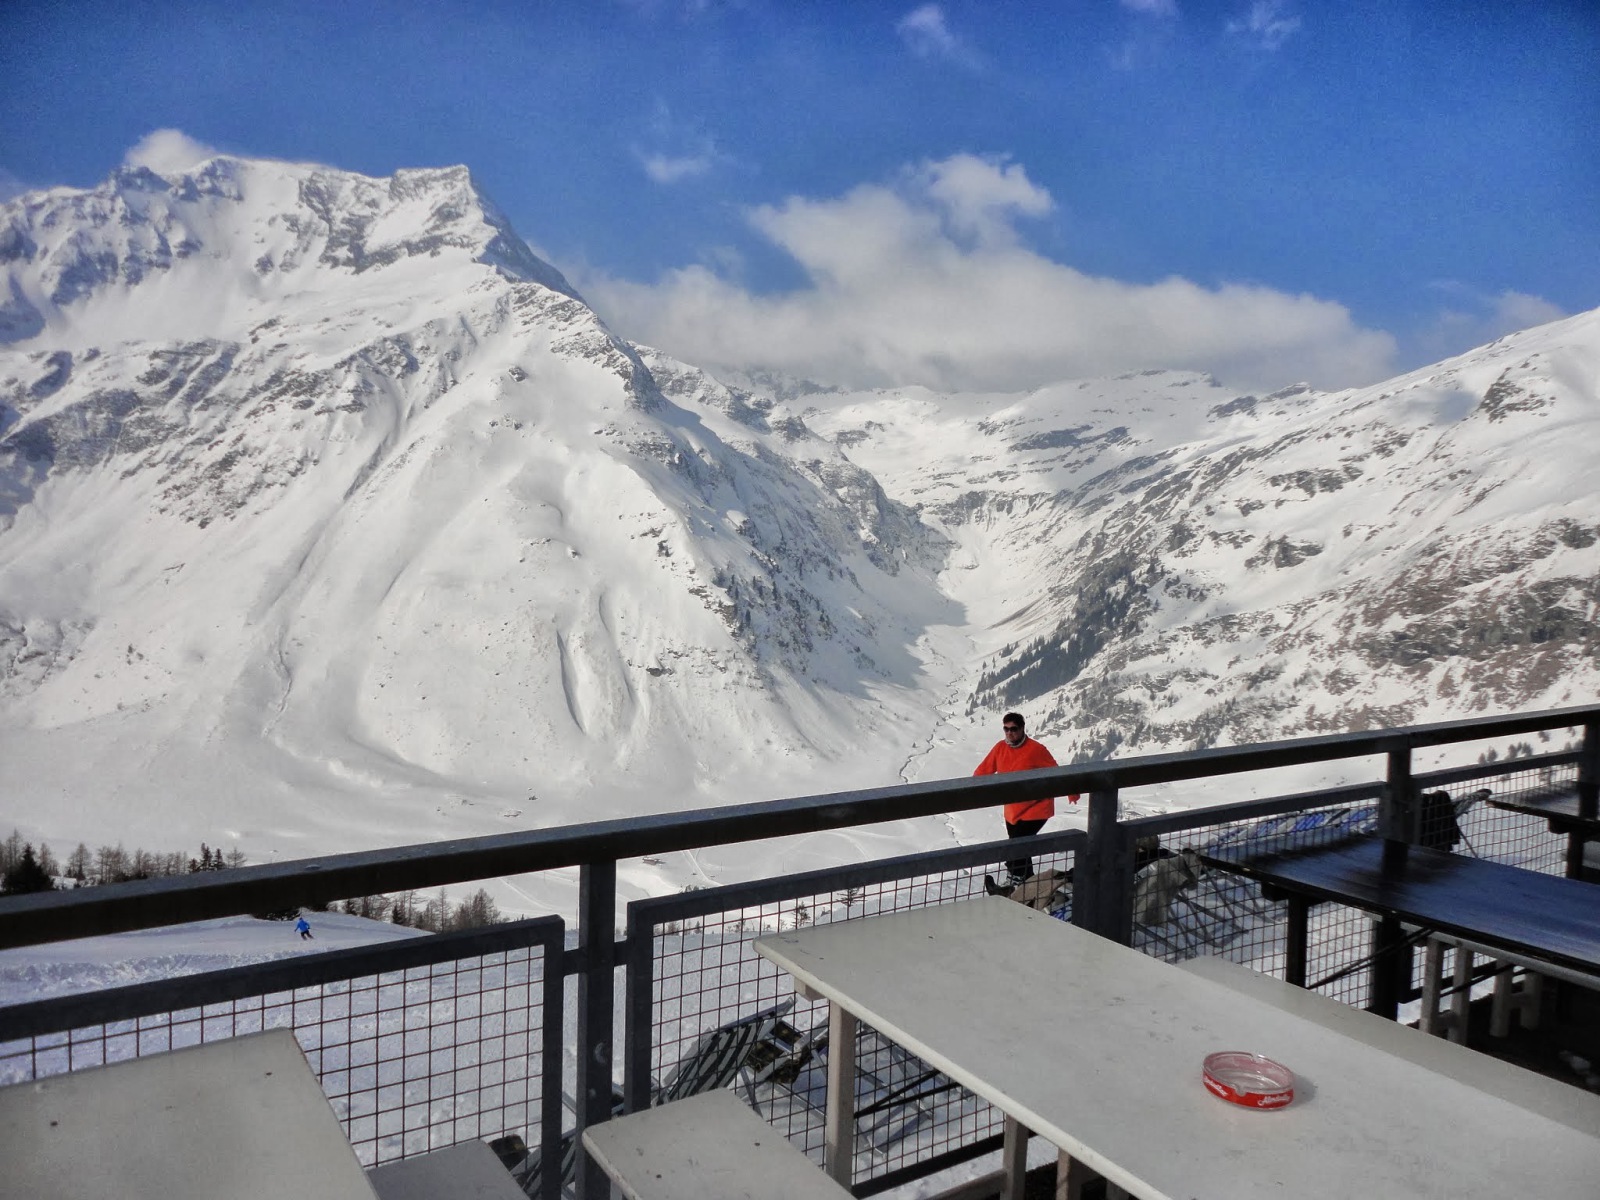 Pazar kilátás a patakvölgyre és a szemközti hegyekre a Sportgastein síterület középállomásán található étterem teraszáról